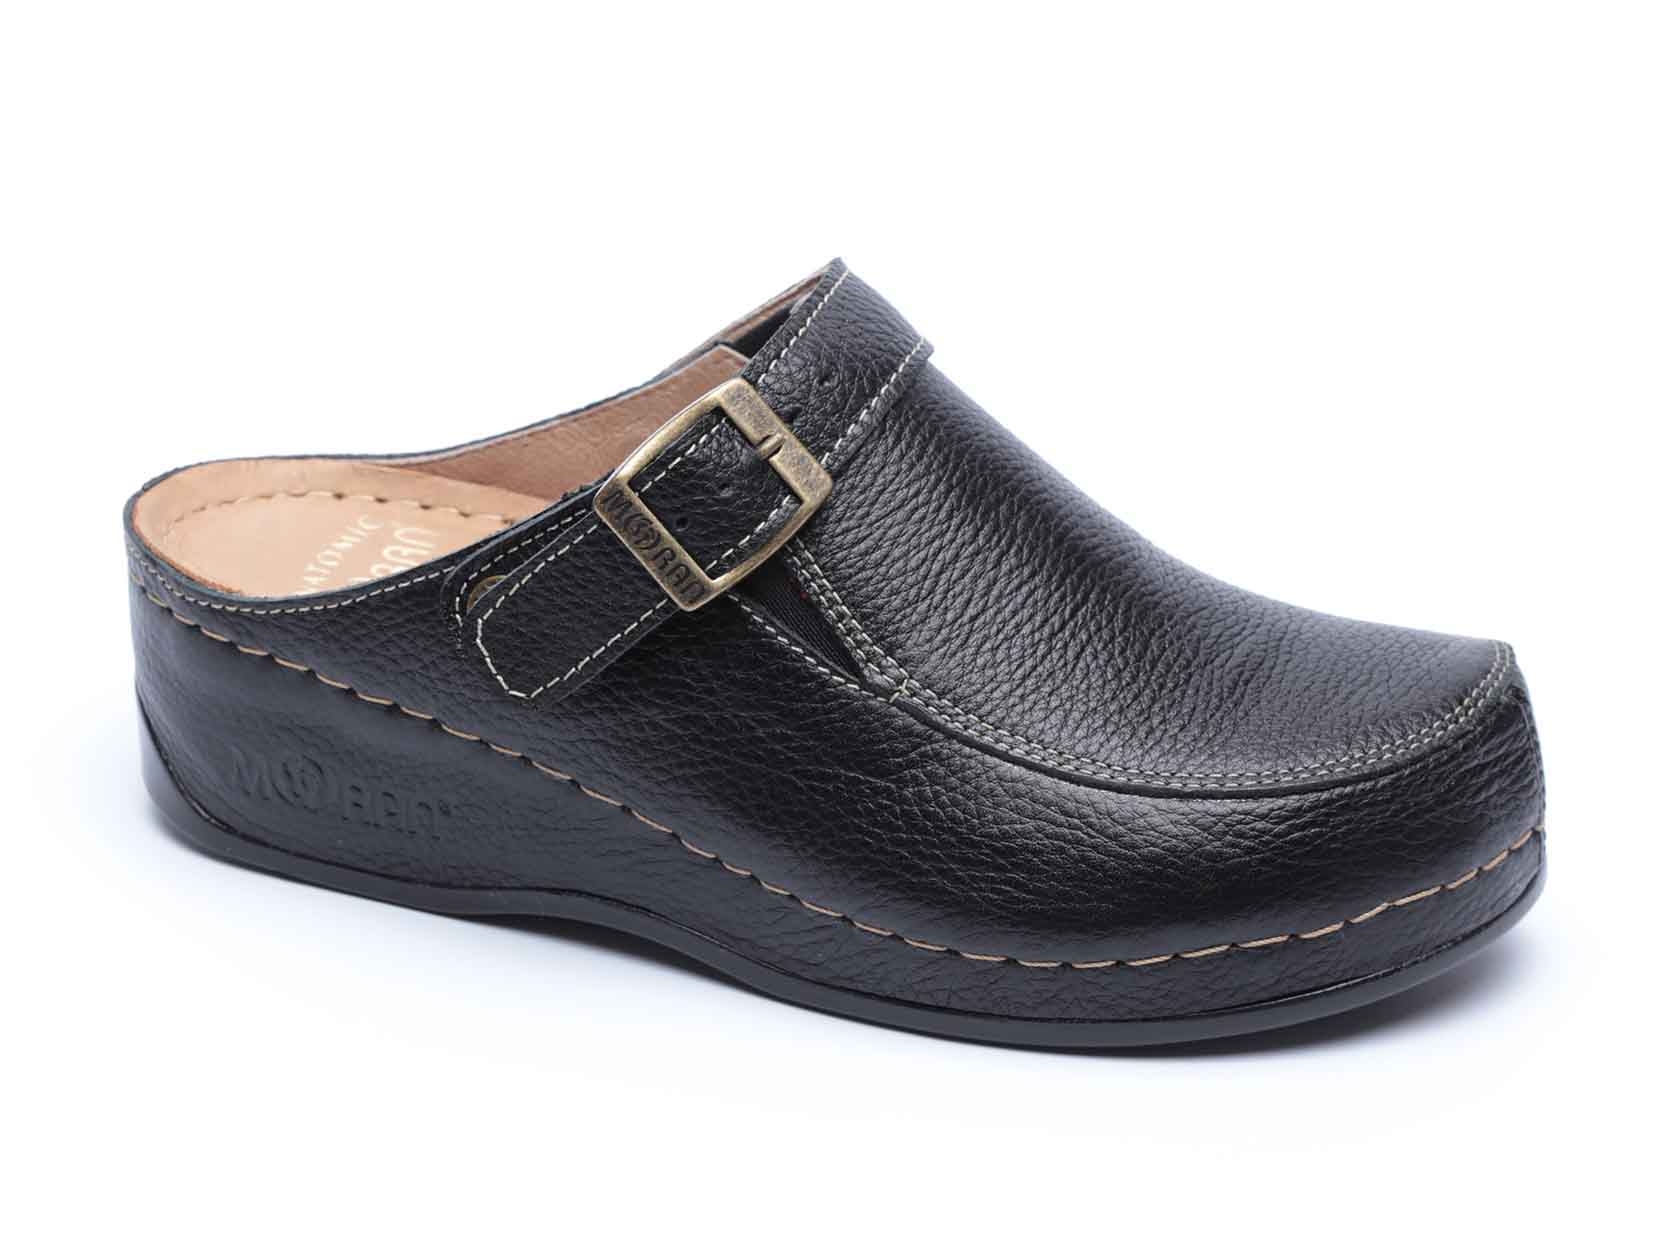 נעלי נשים נוחות מדגם לינדזי שחור - כפכף מוגבה